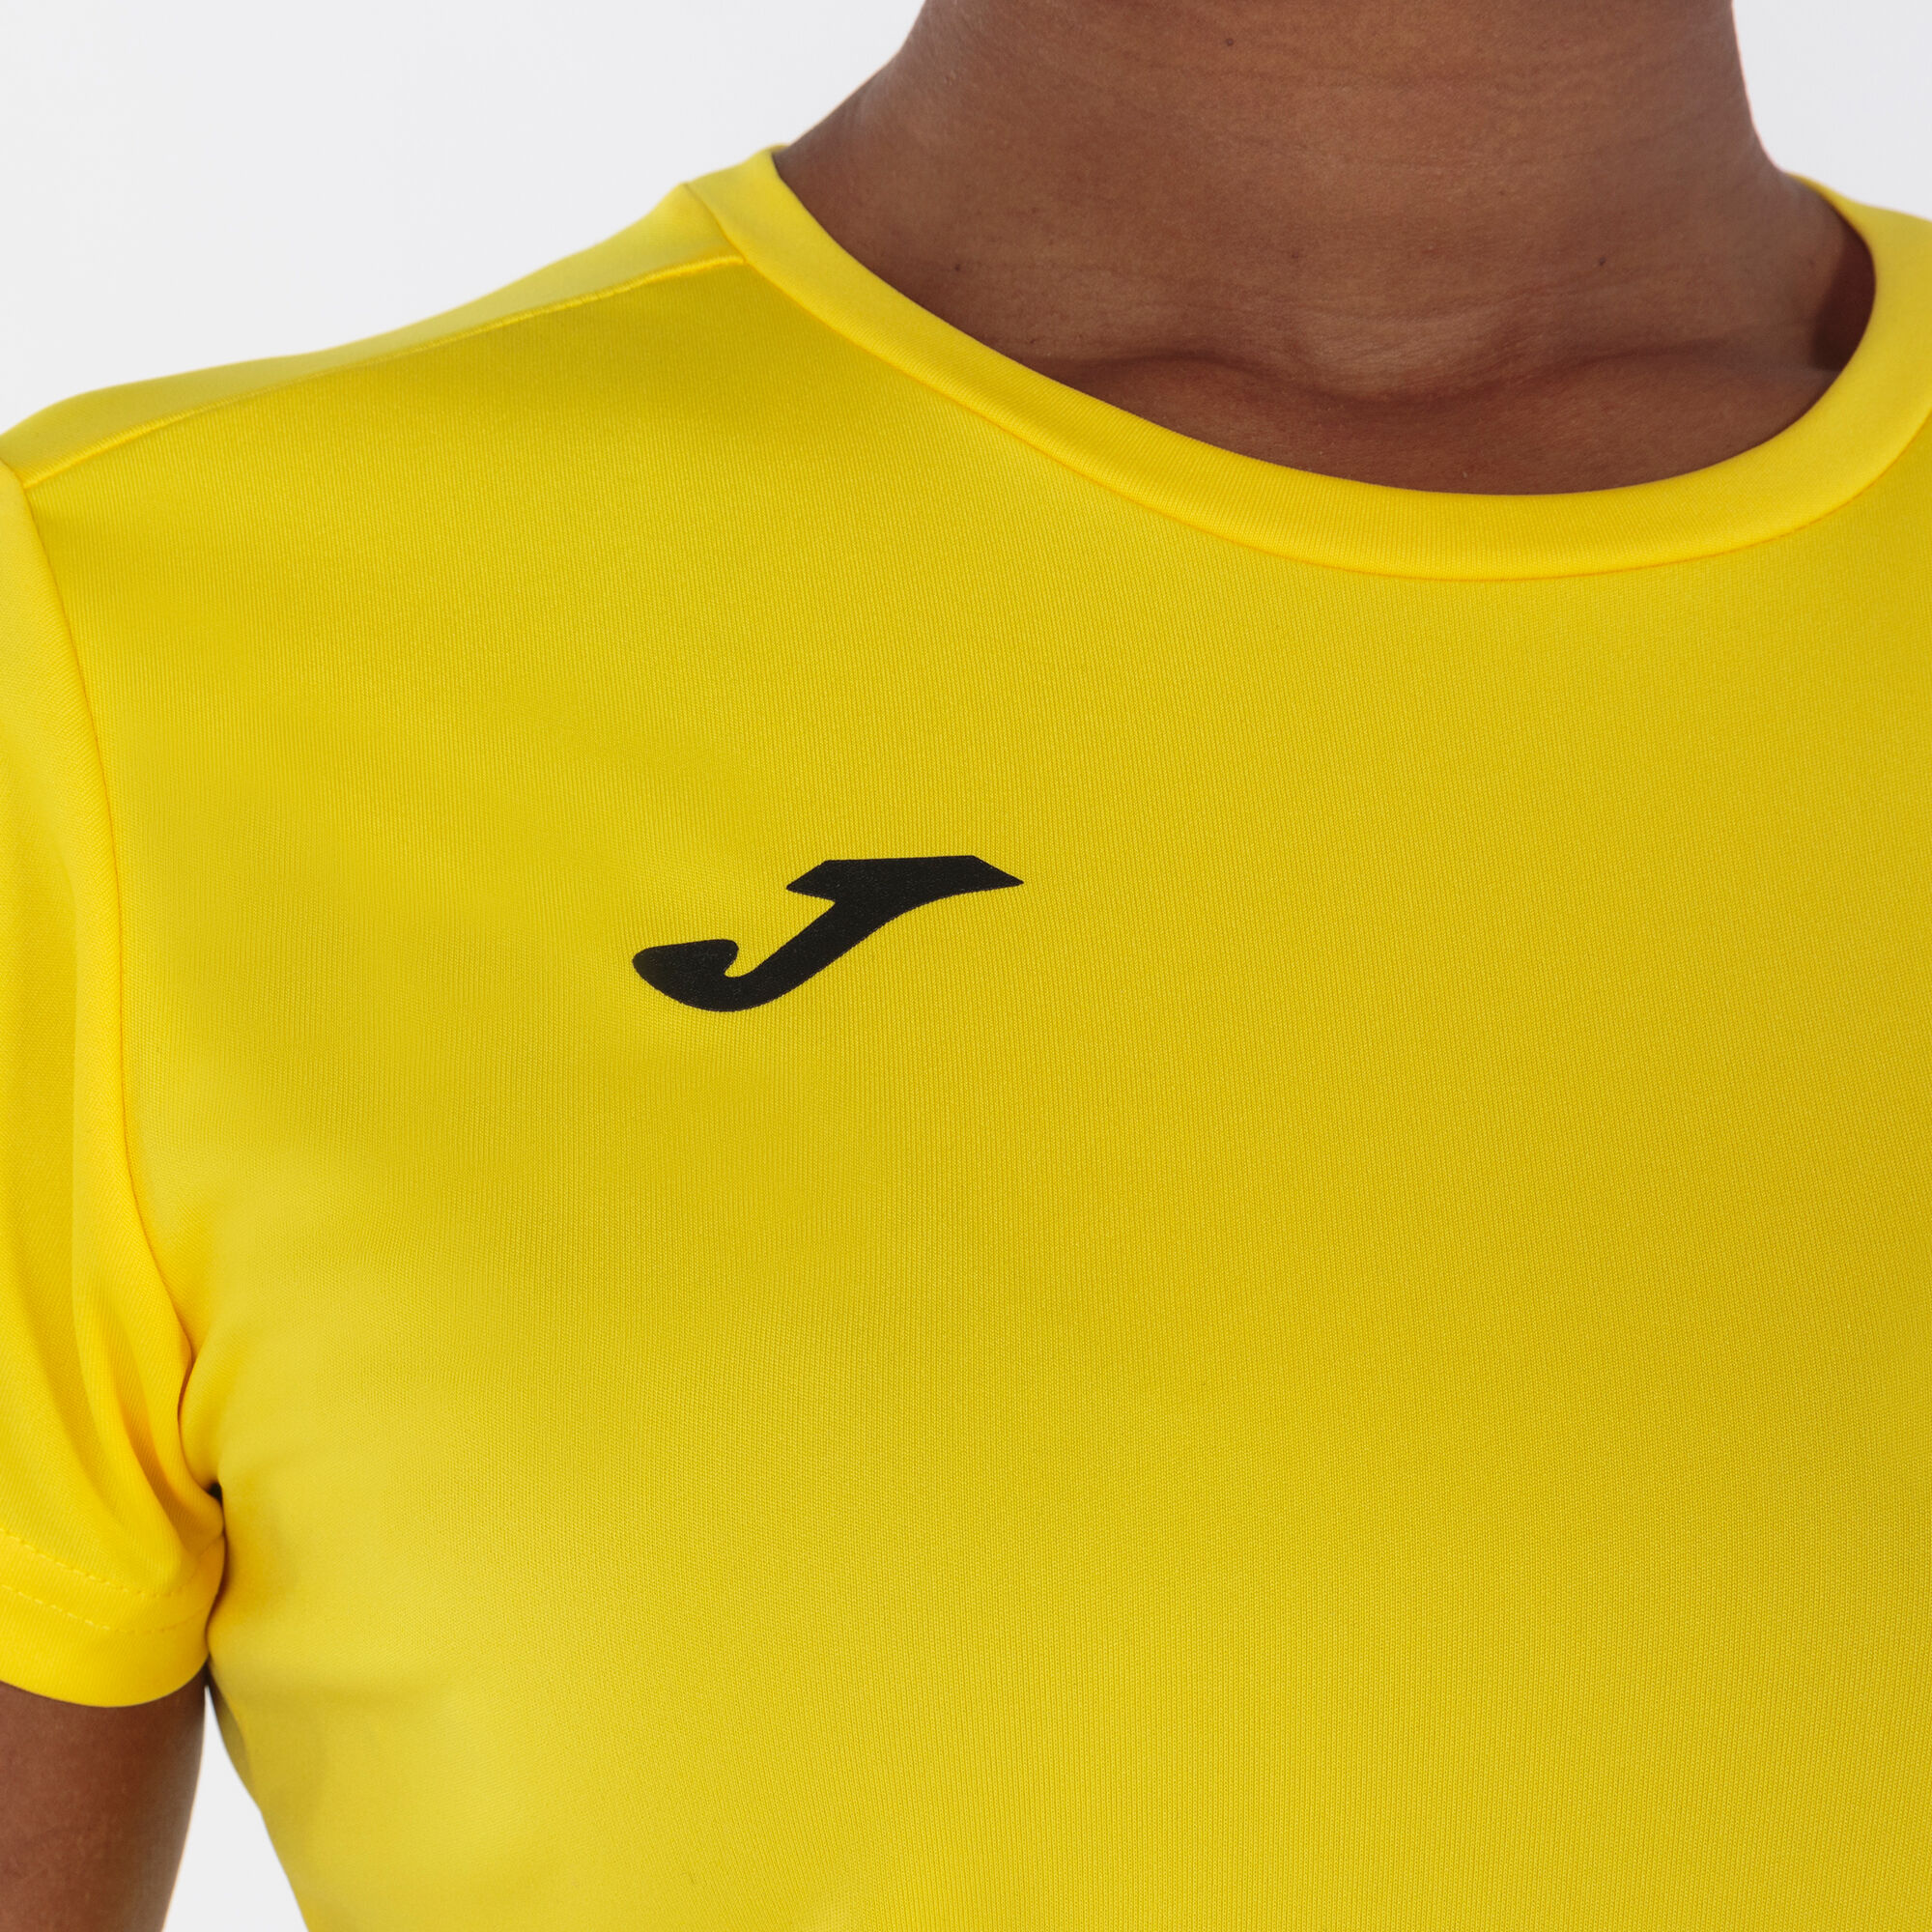 Camiseta manga corta mujer Combi amarillo